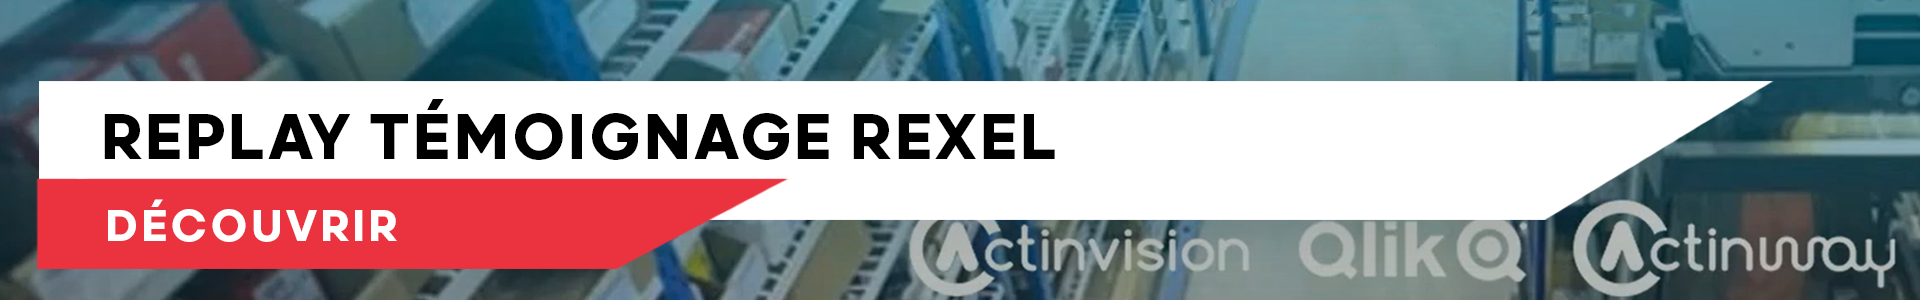 Replay témoignage rexel banner